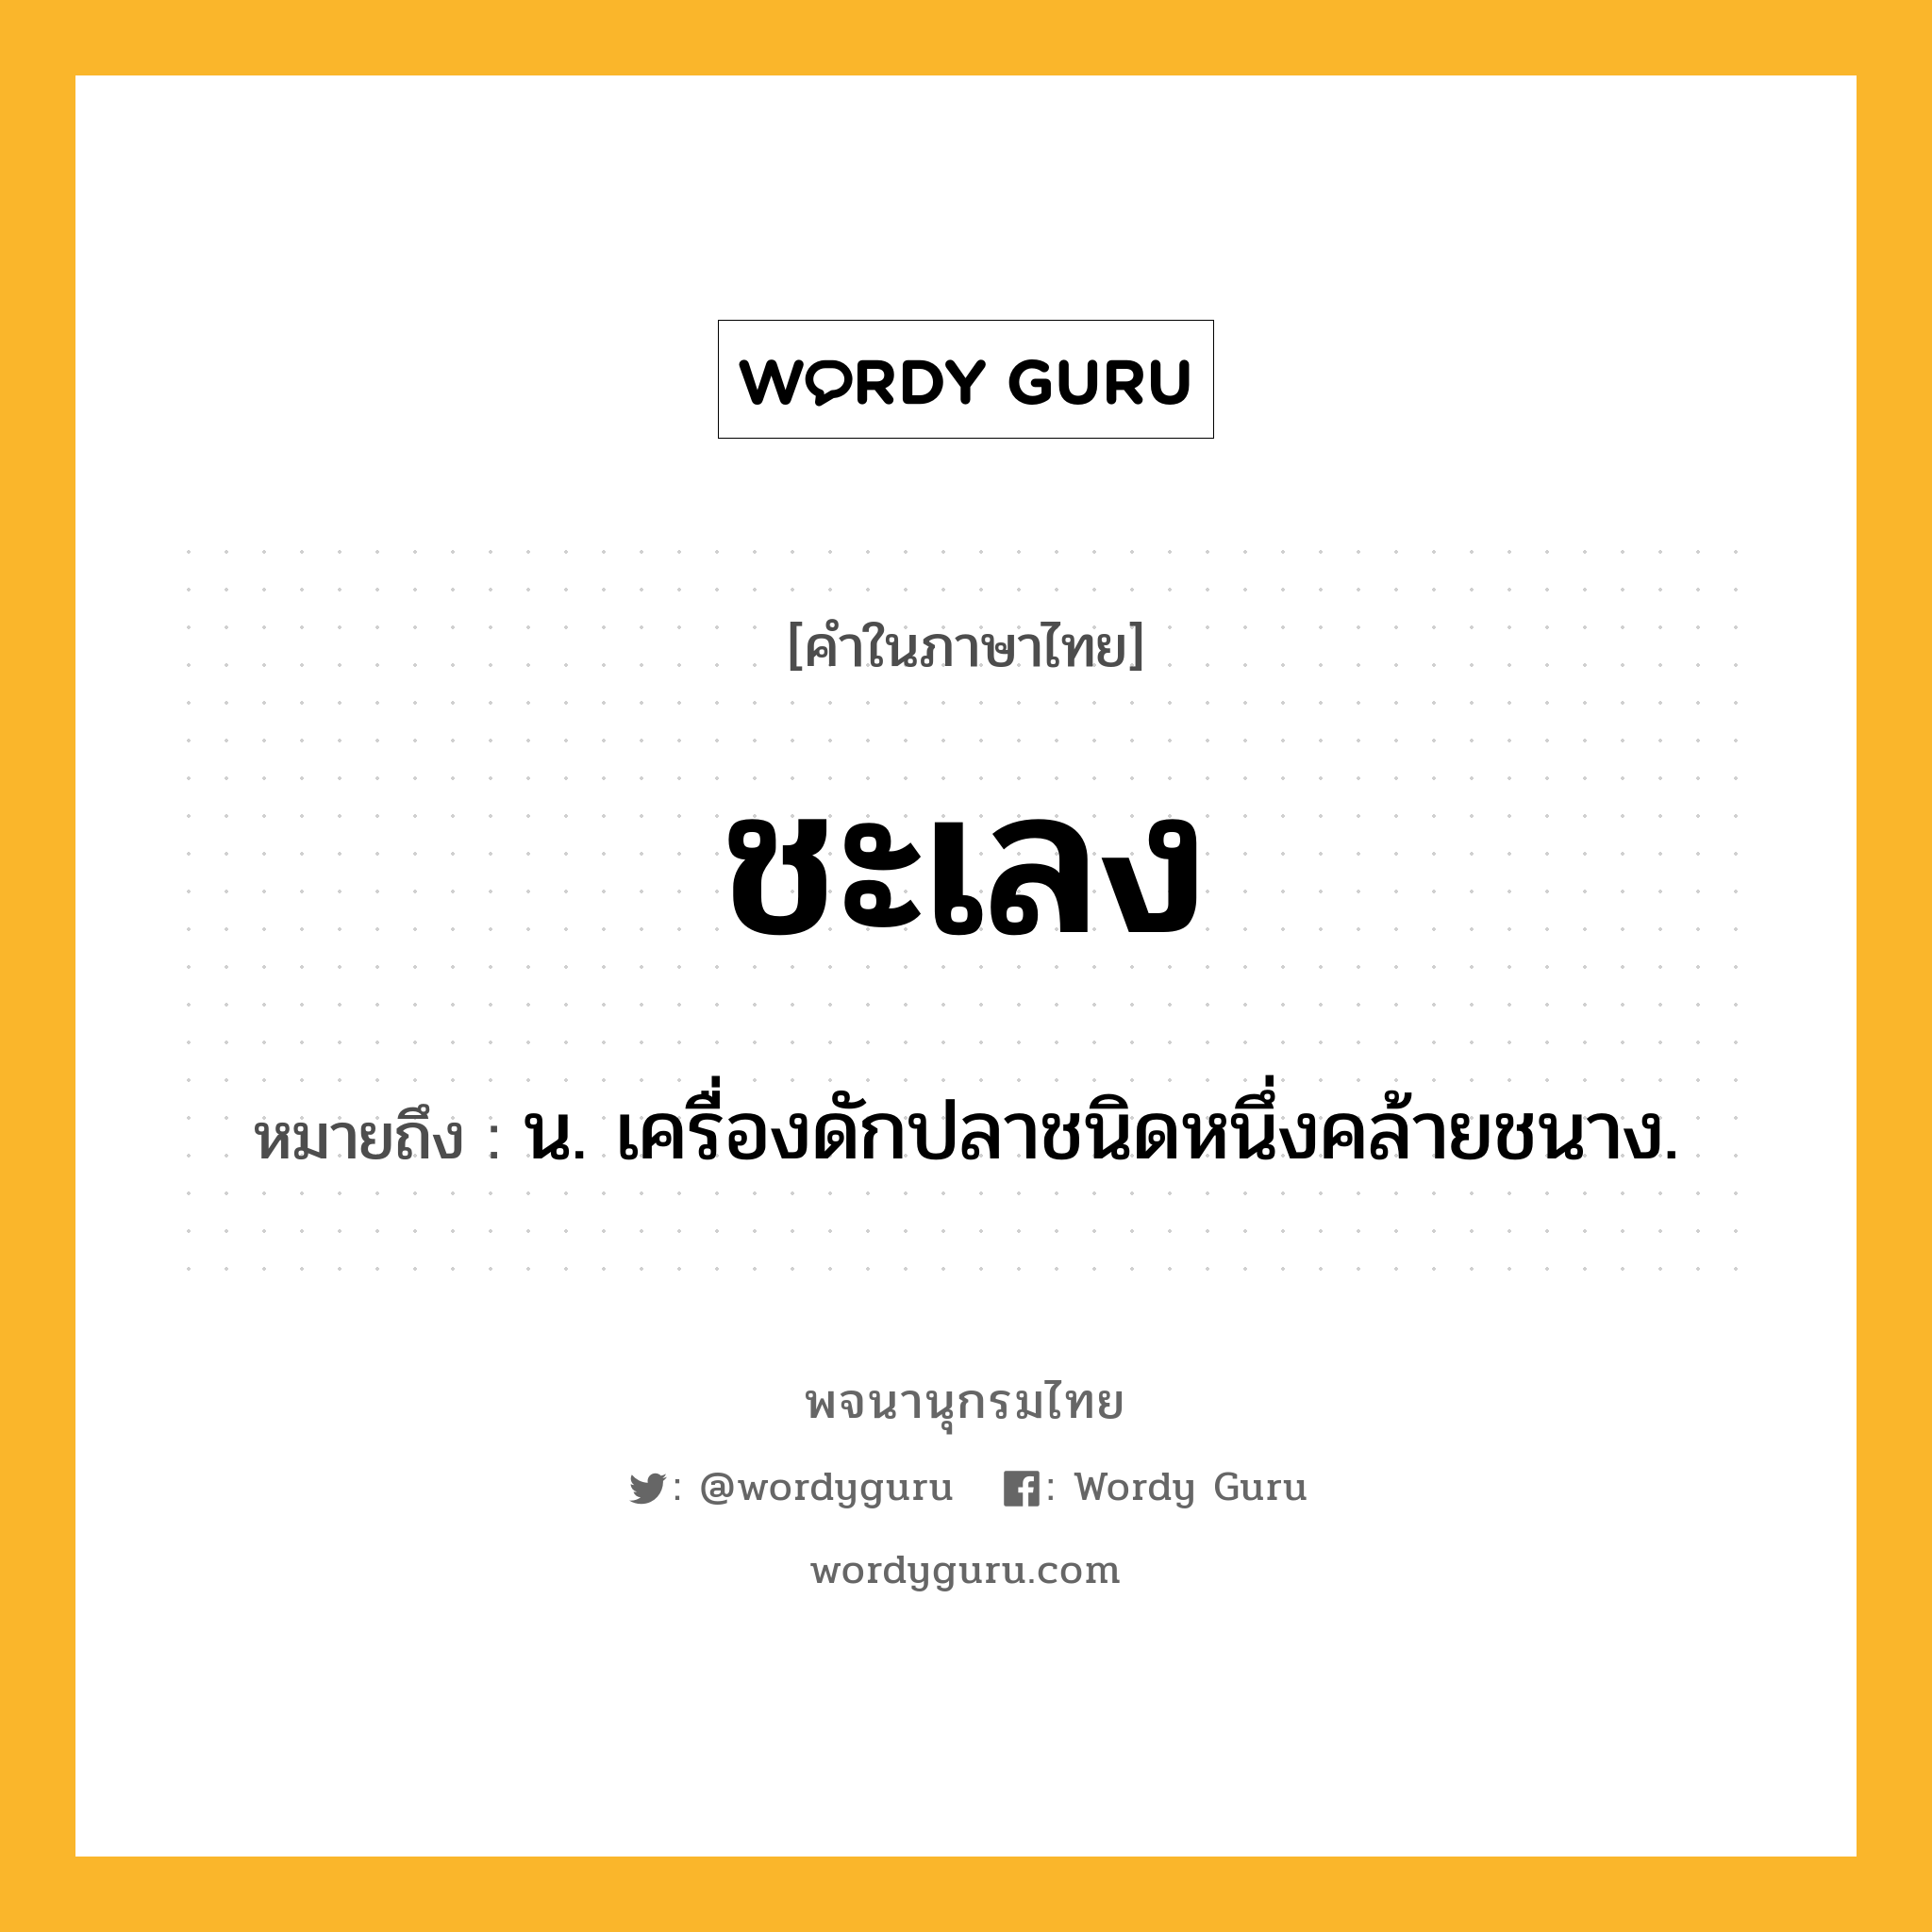 ชะเลง ความหมาย หมายถึงอะไร?, คำในภาษาไทย ชะเลง หมายถึง น. เครื่องดักปลาชนิดหนึ่งคล้ายชนาง.